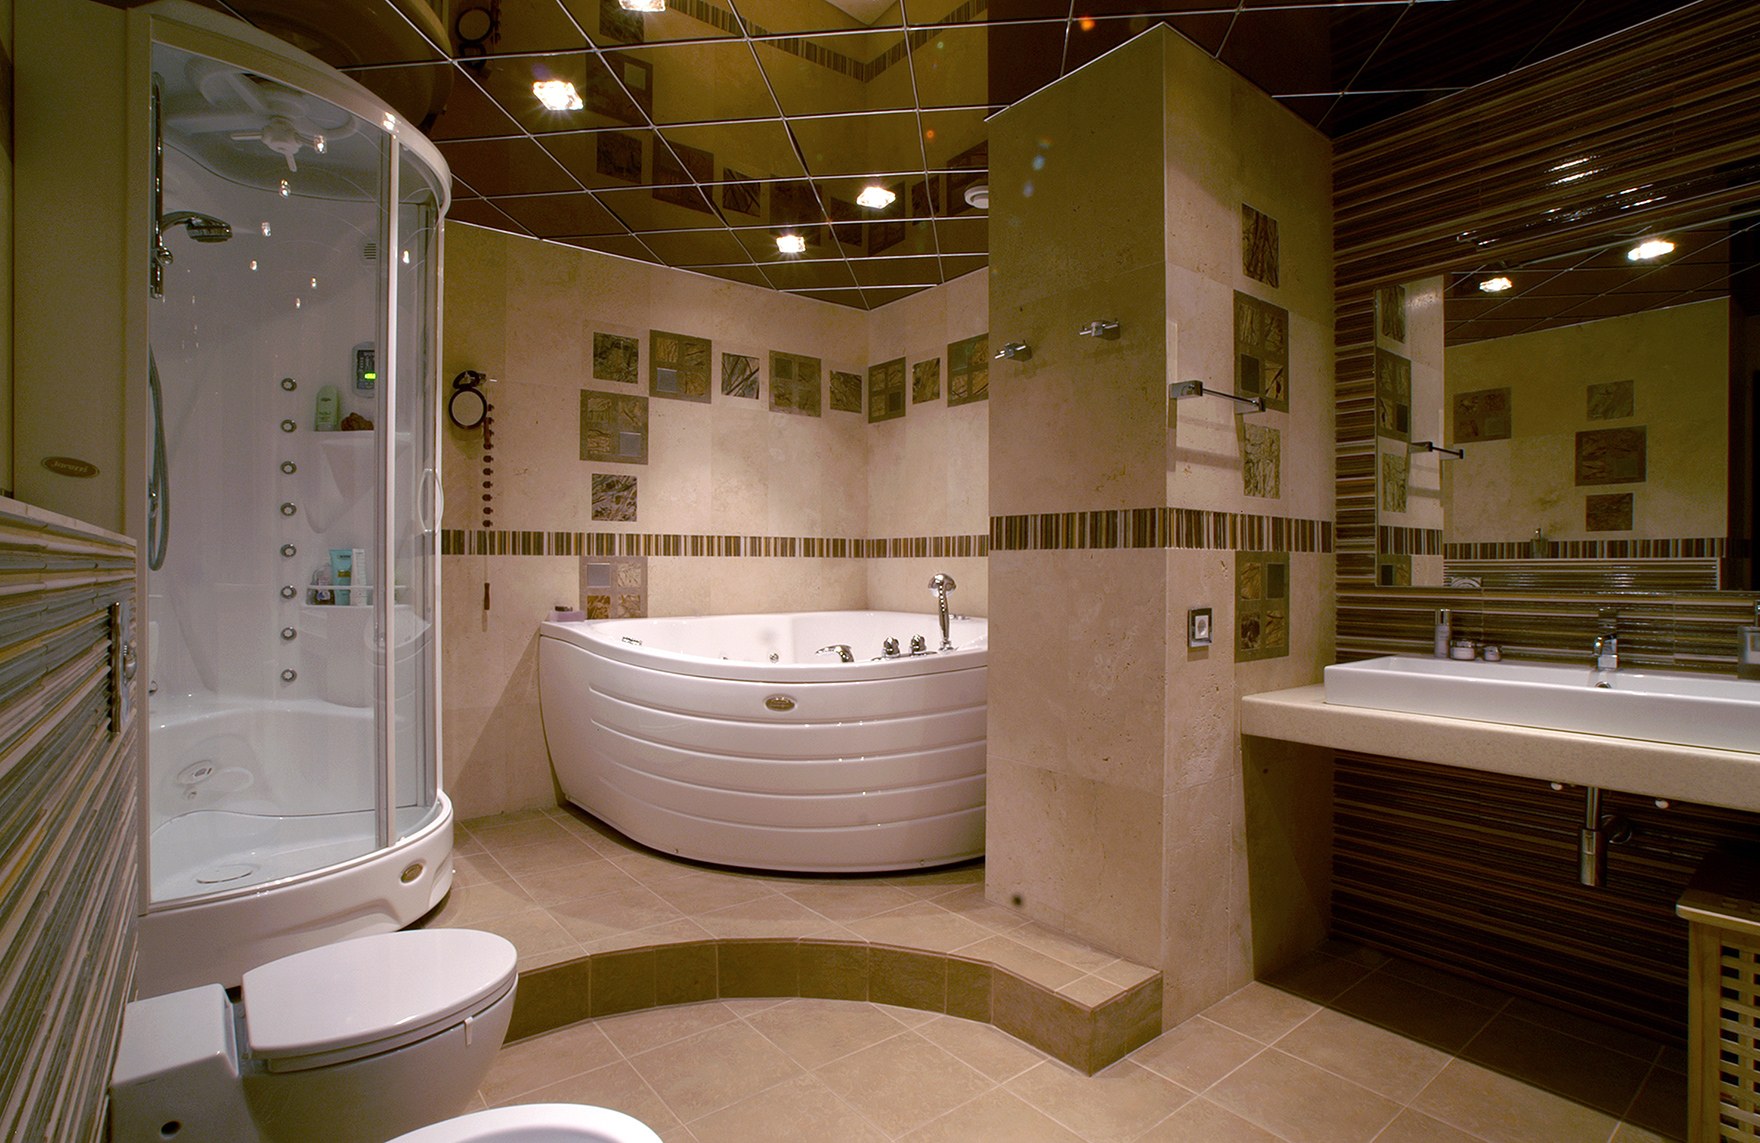 Ванные комнаты магазин москва. Ванная комната. Красивые Ванные комнаты. Ванная сугровой ванной. Совмещённый санузел с угловой ванной.